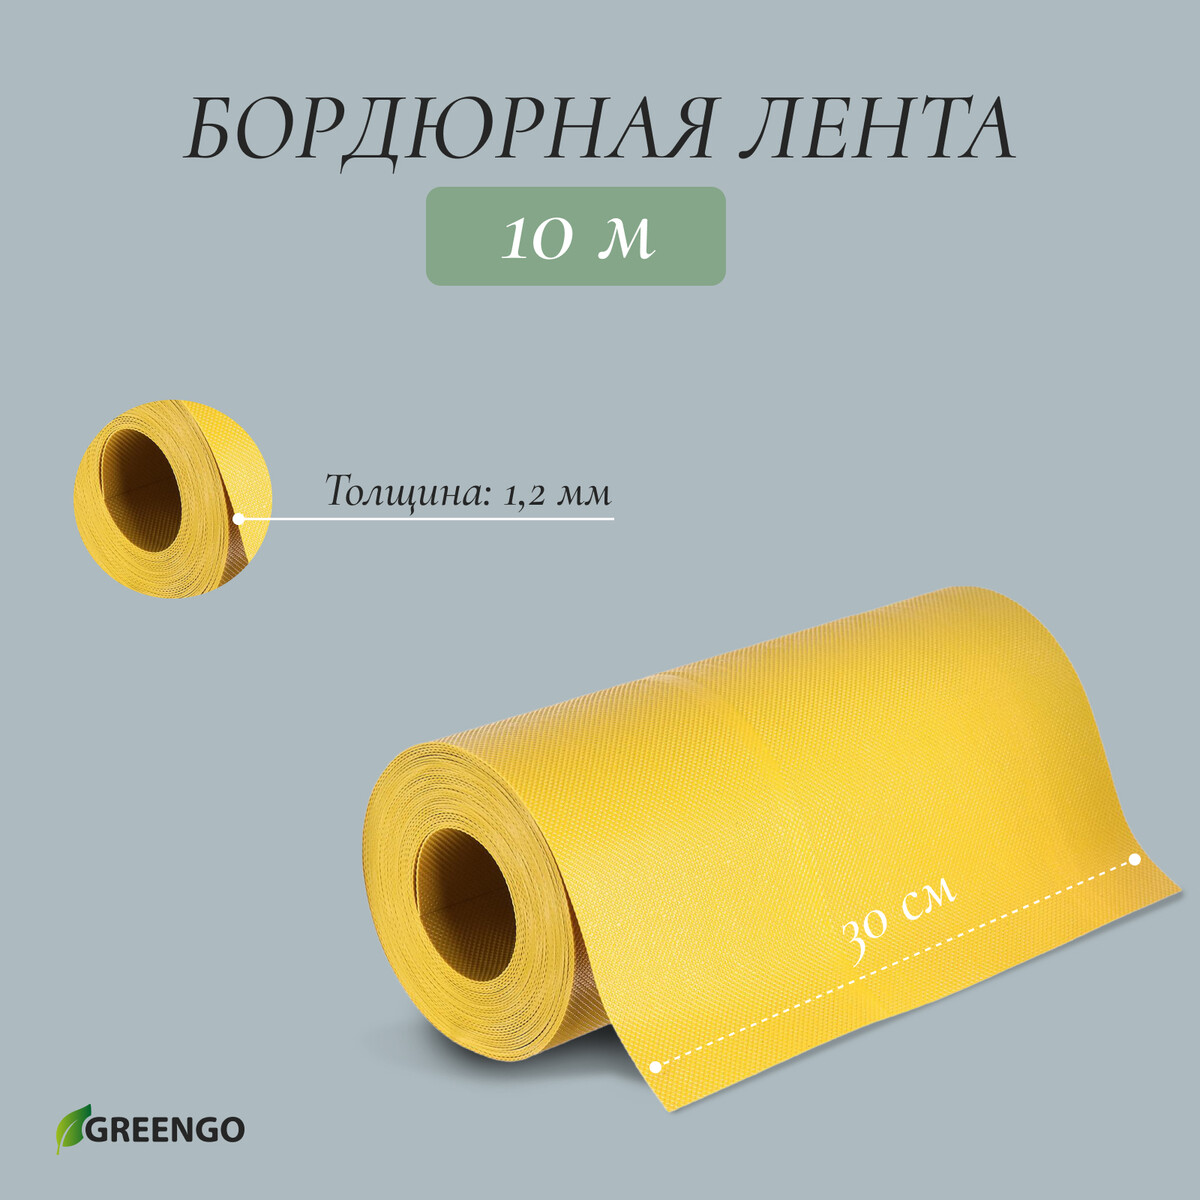 Лента бордюрная, 0.3 × 10 м, толщина 1.2 мм, пластиковая, желтая, greengo лента бордюрная 0 15 × 10 м толщина 1 2 мм пластиковая зеленая greengo